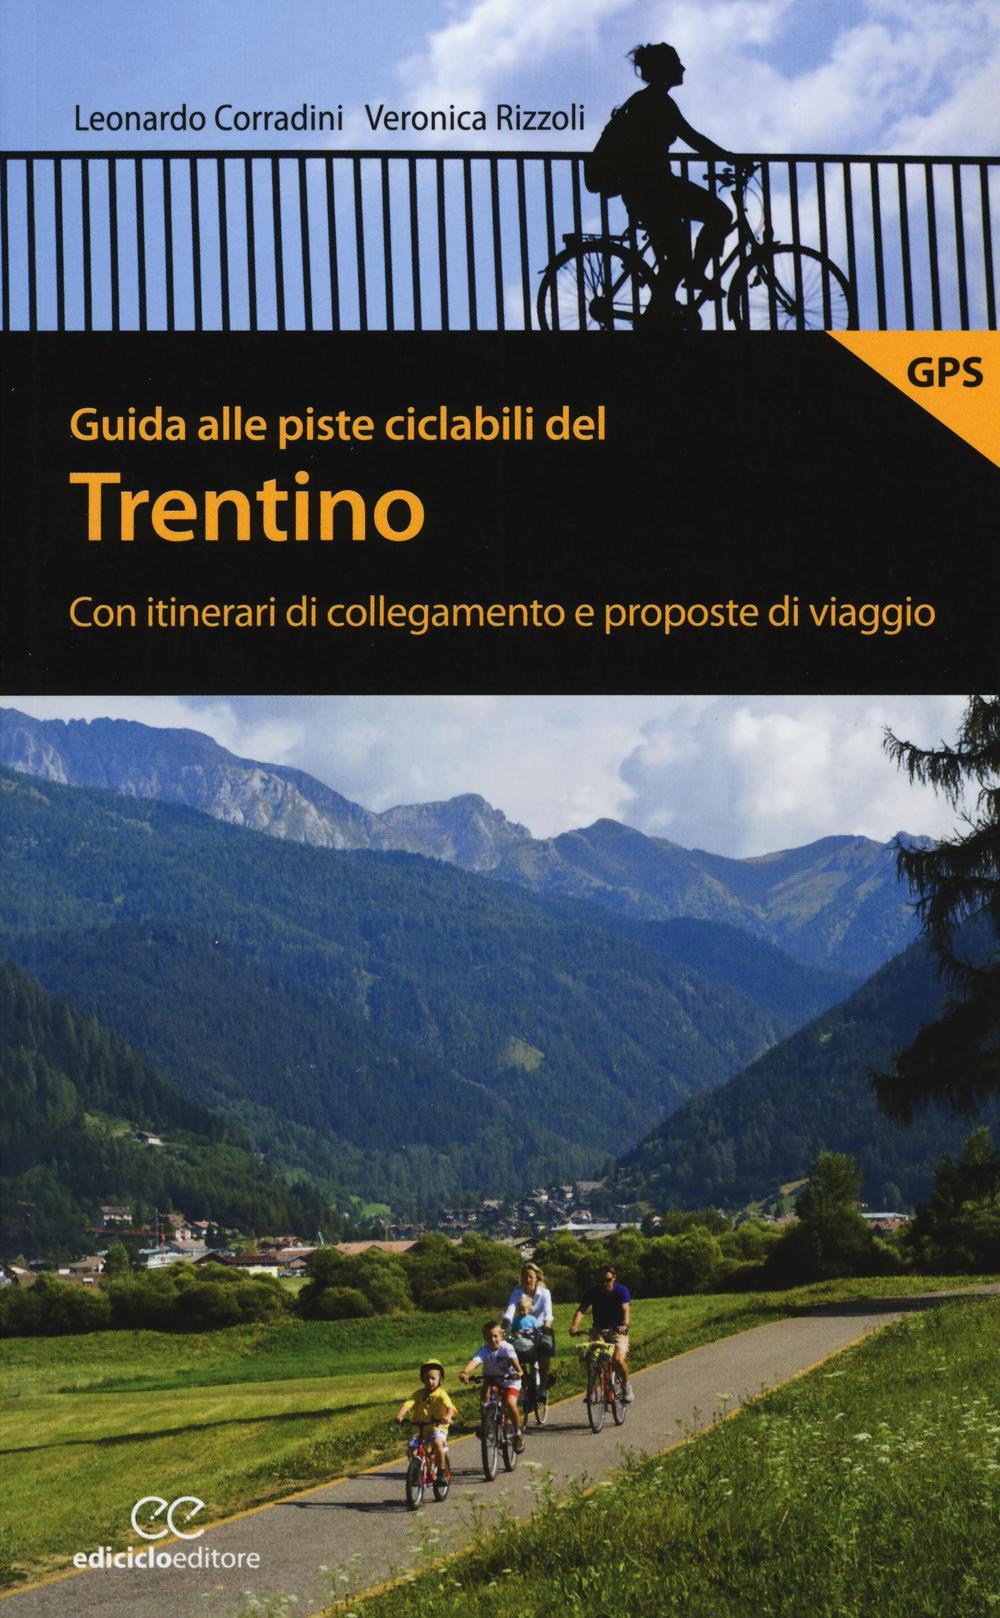 Guida alle piste ciclabili del Trentino. Con itinerari di collegamento e proposte di viaggio.